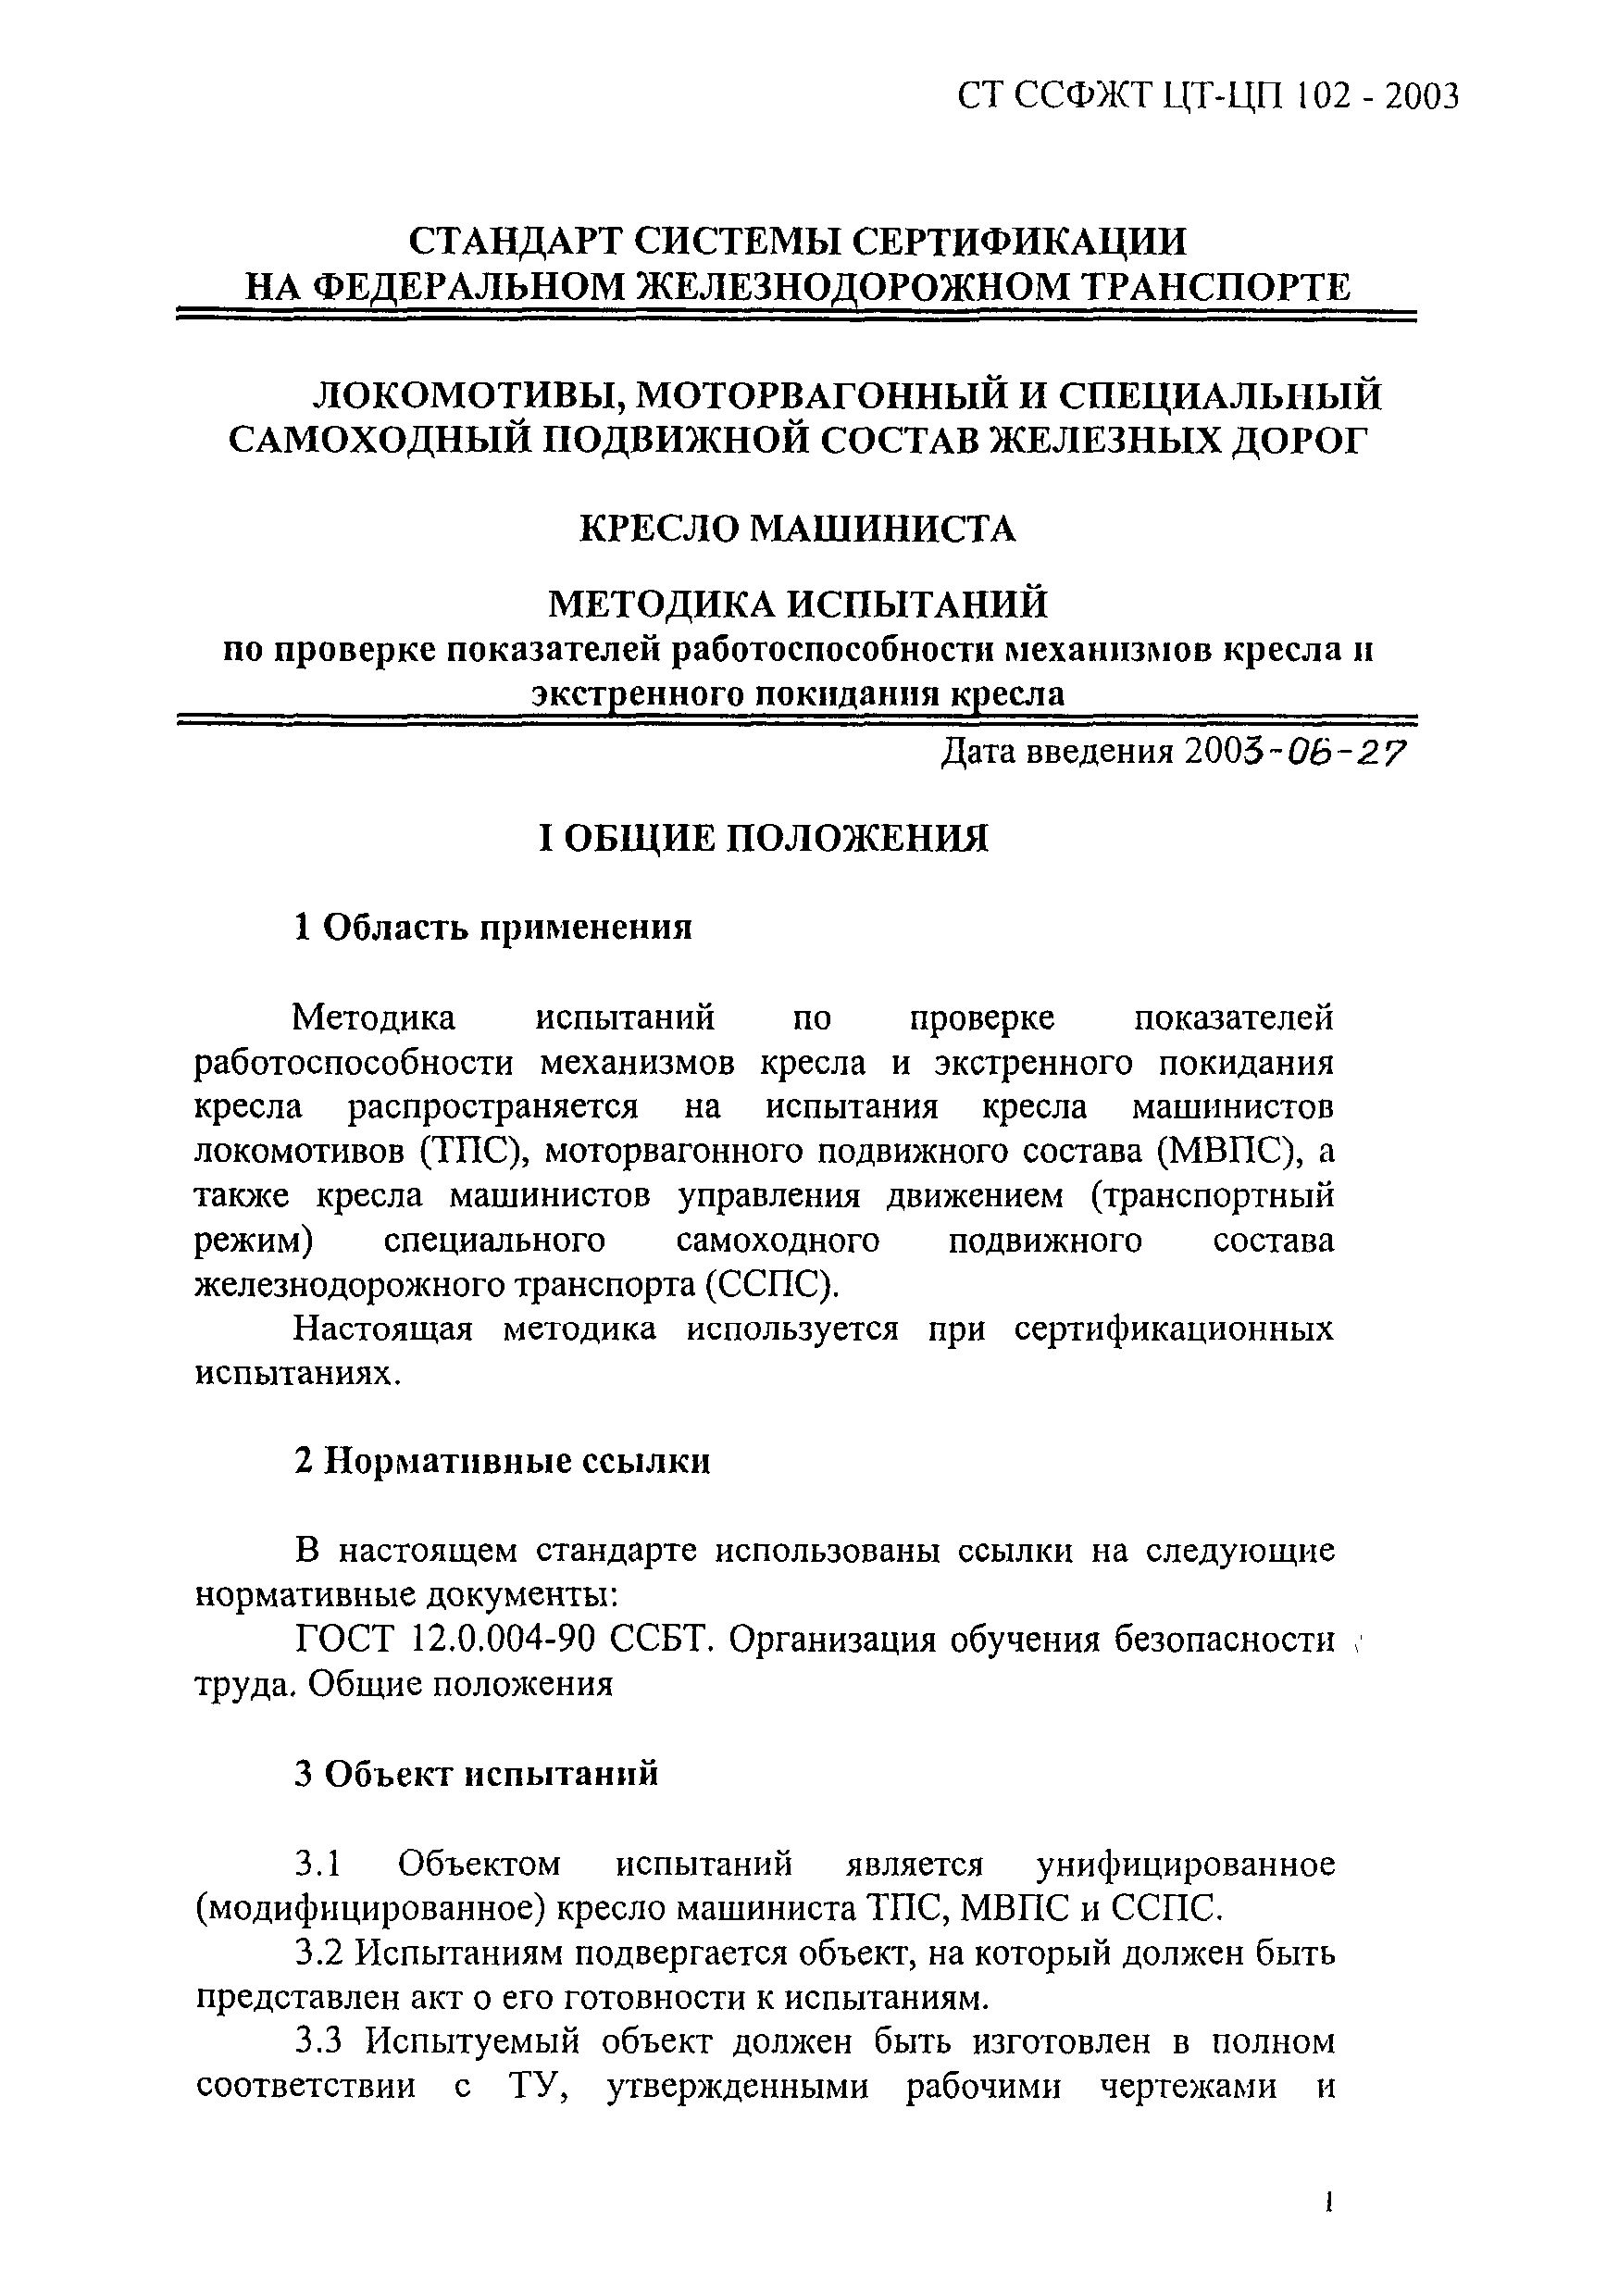 СТ ССФЖТ ЦТ-ЦП 102-2003